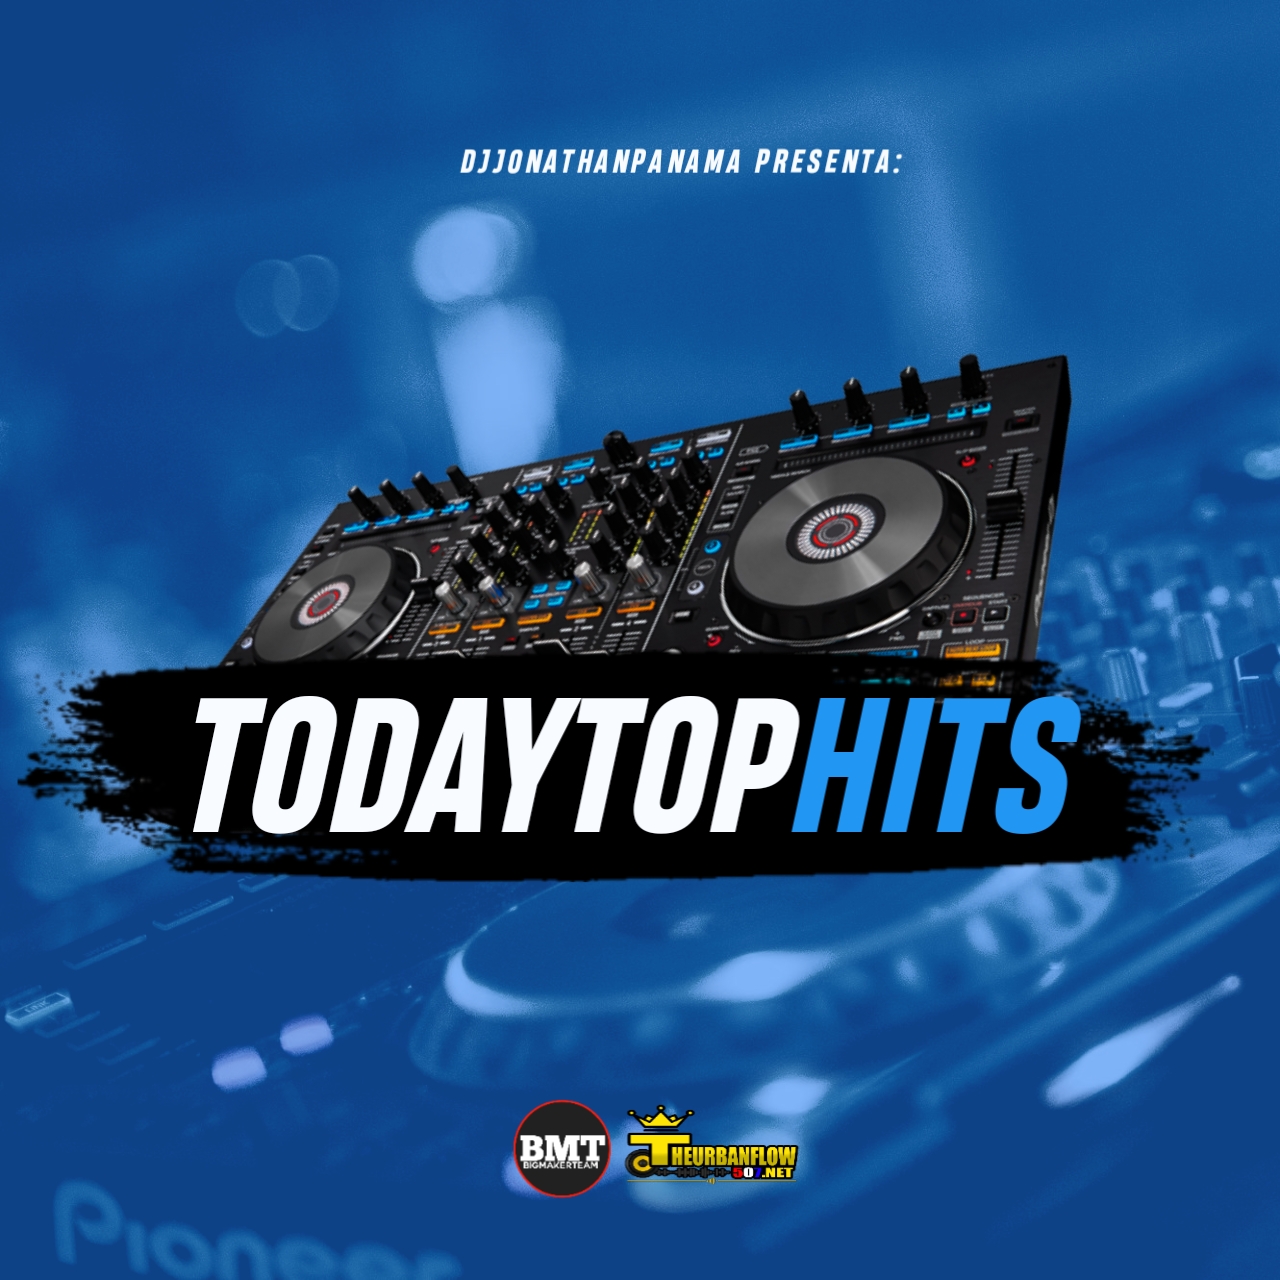 TodaysTop Hits Mix 2020 - @DjjonathanPanama